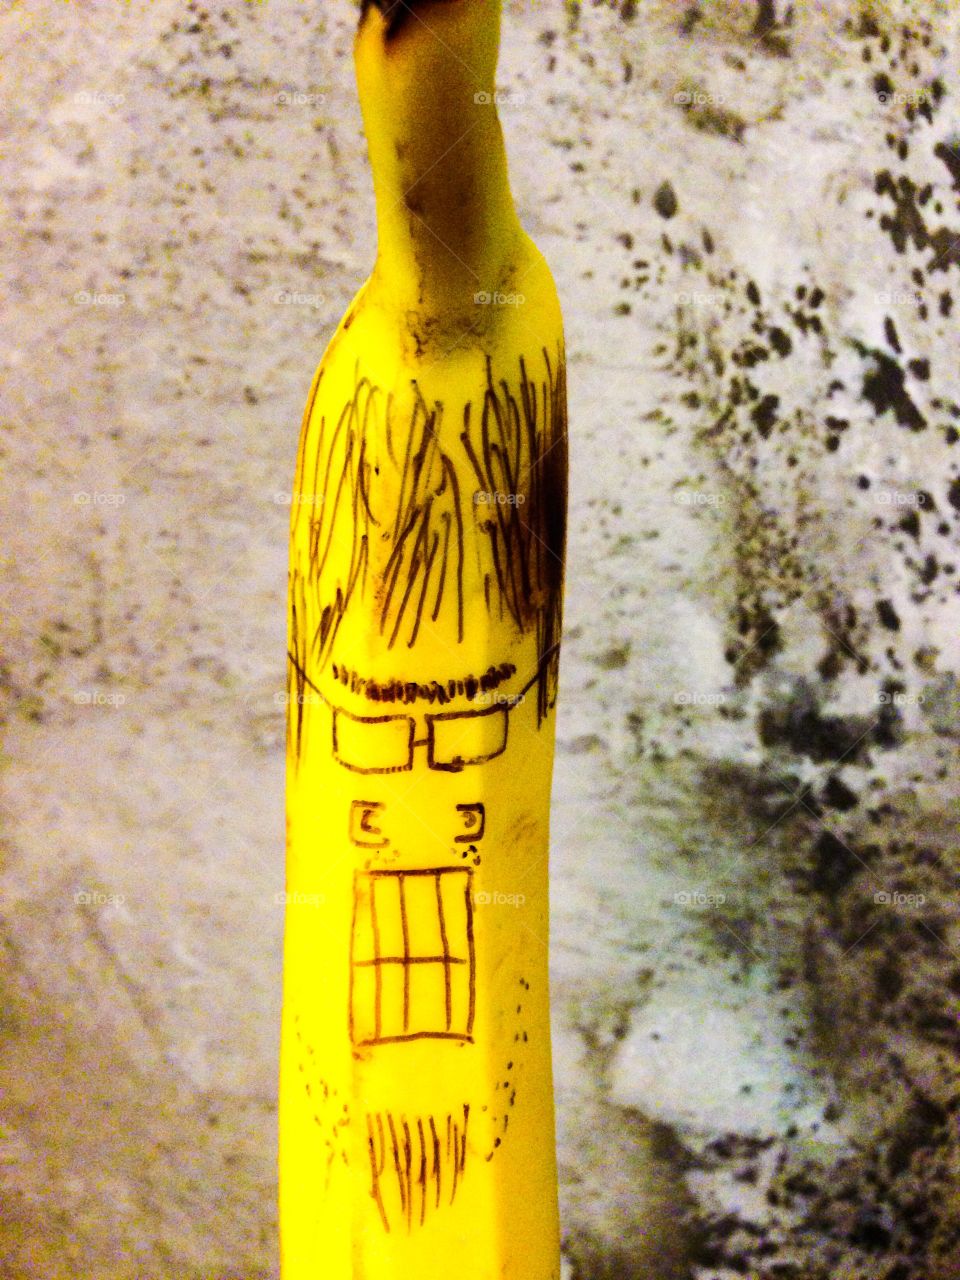 Angry banana. Drawing on a banana